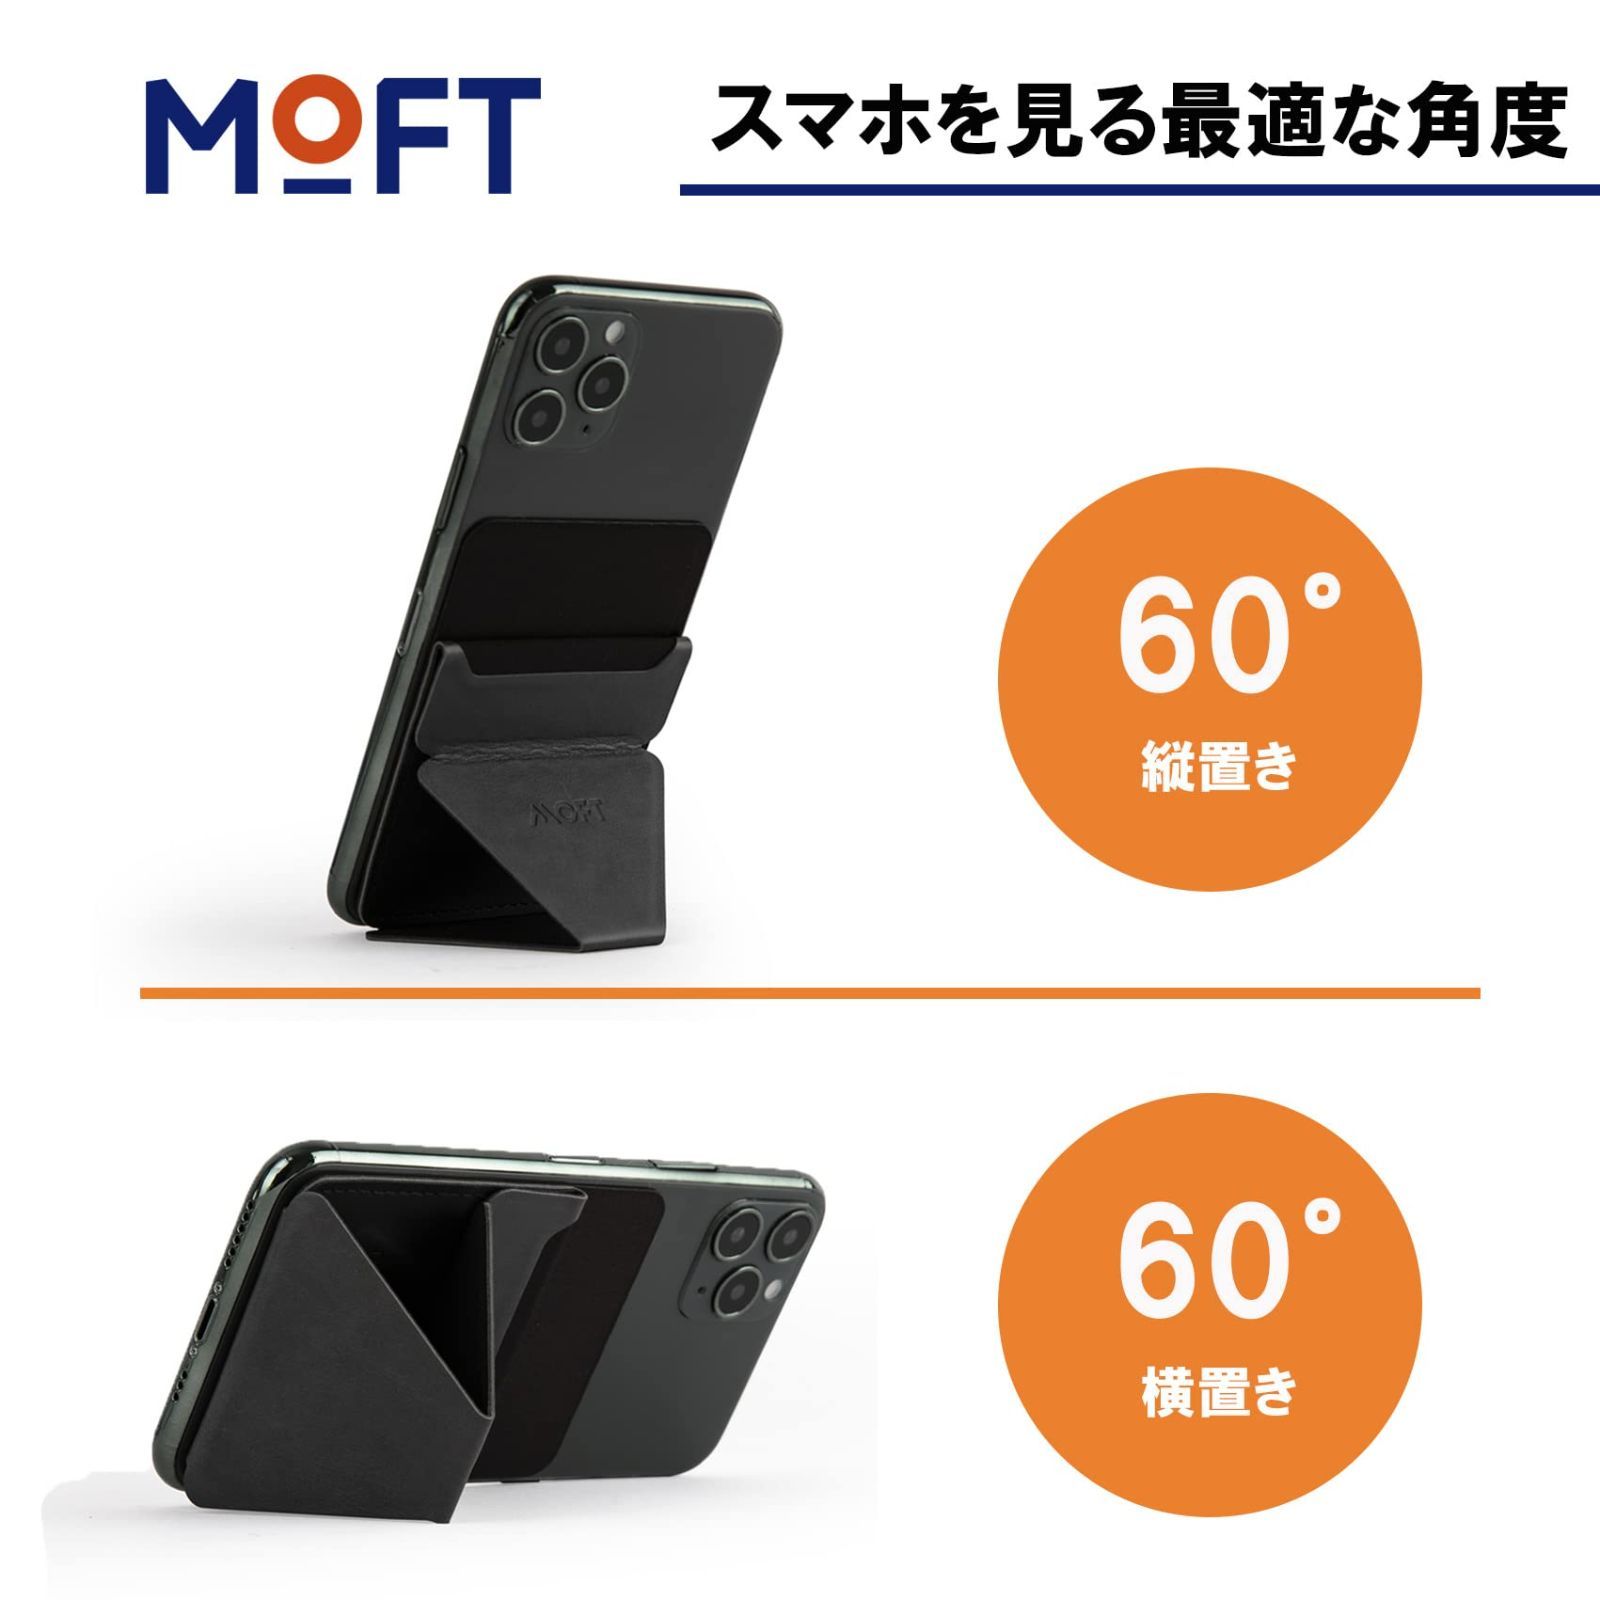 MOFT X スマホスタンド スマホホルダー スキミング防止カードケース iPhoneSE iPhone11 iPhone12 iPhone